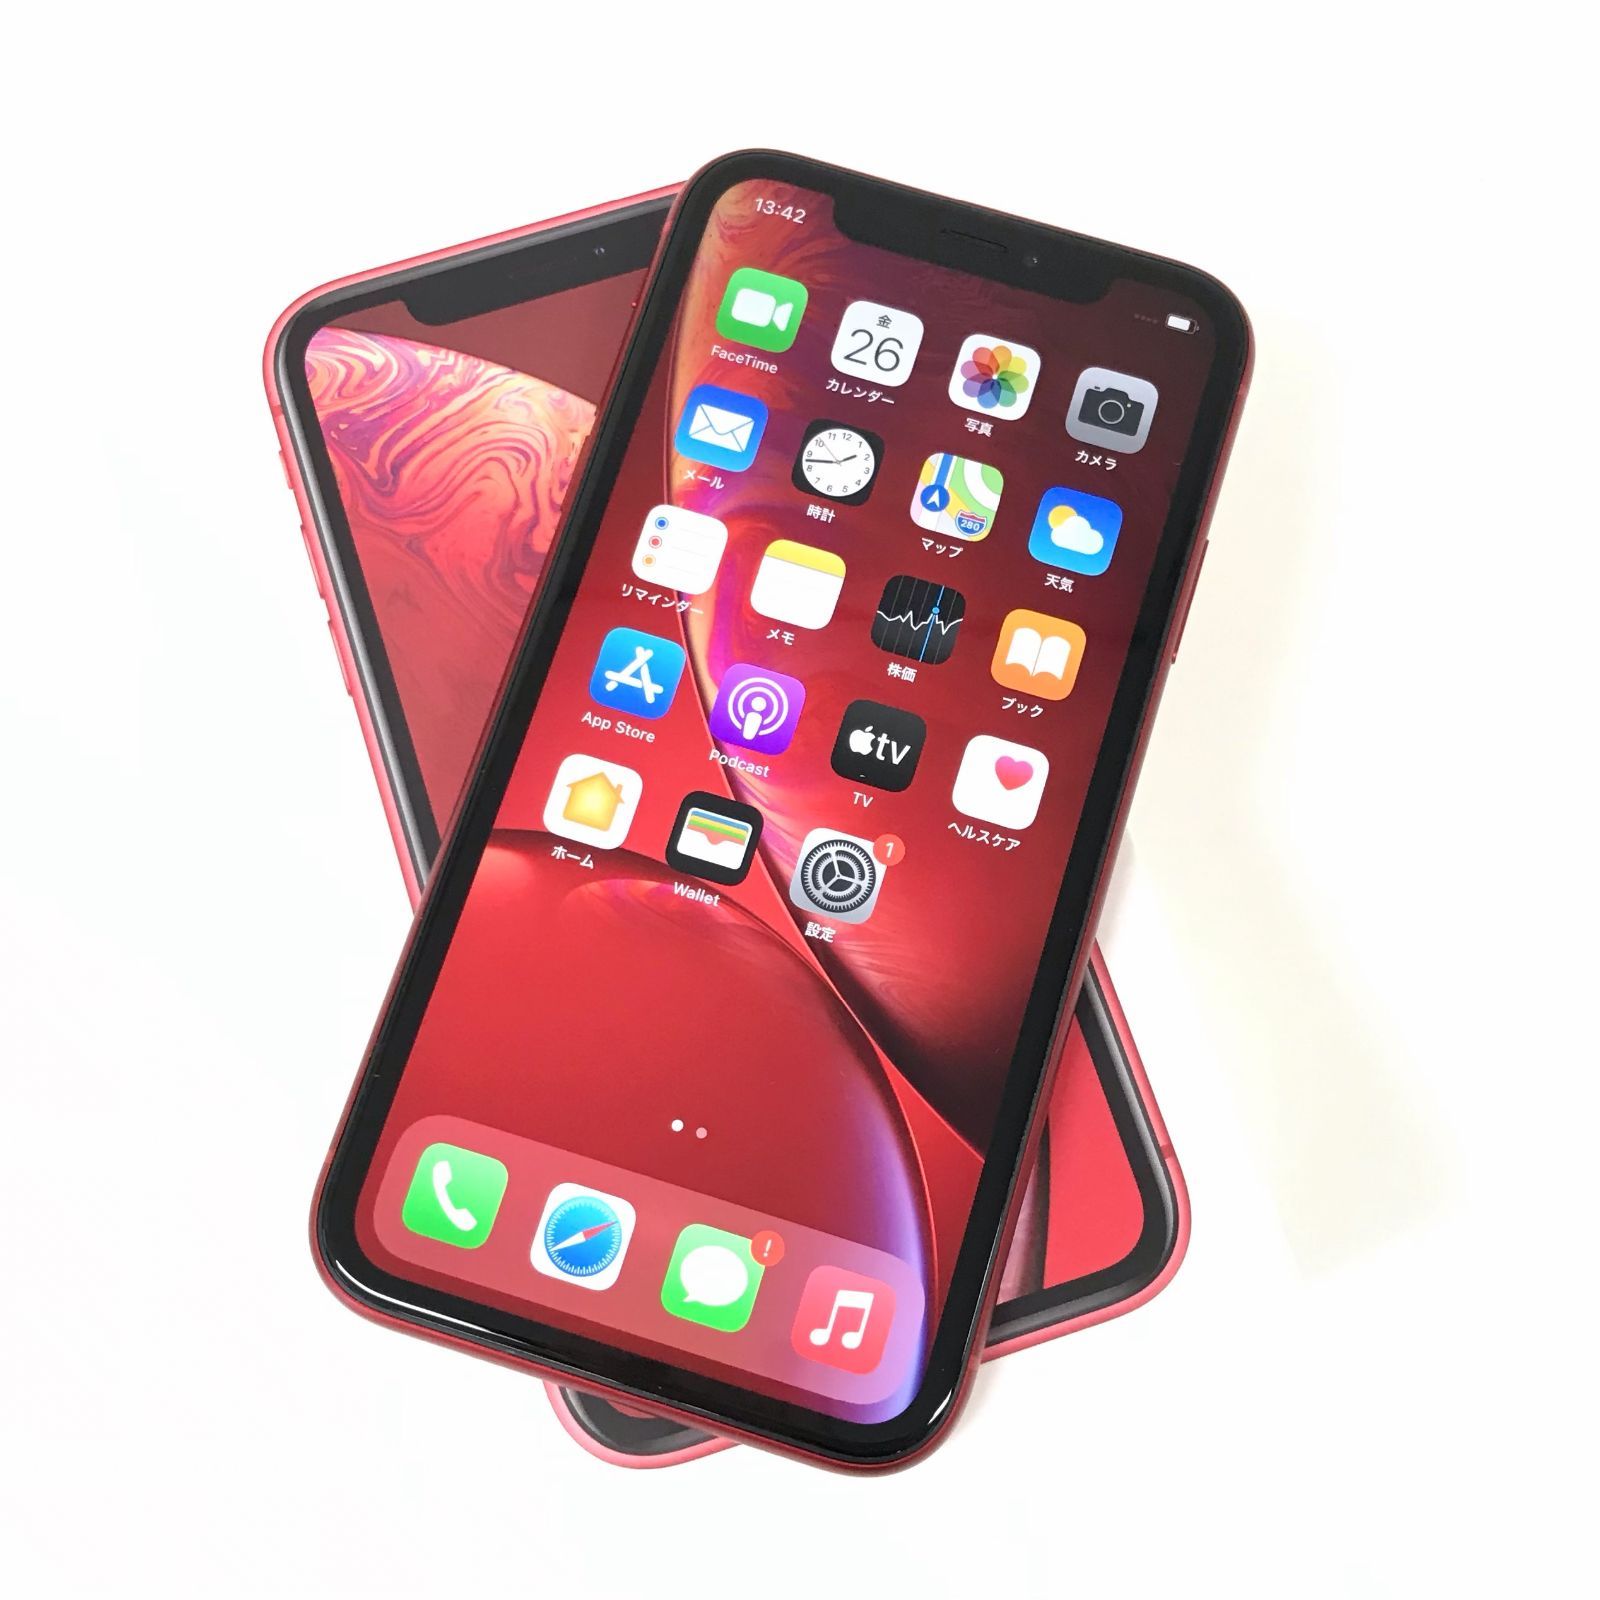 θ【ジャンク品/SIMロック解除済み】iPhone XR 64GB RED - メルカリ